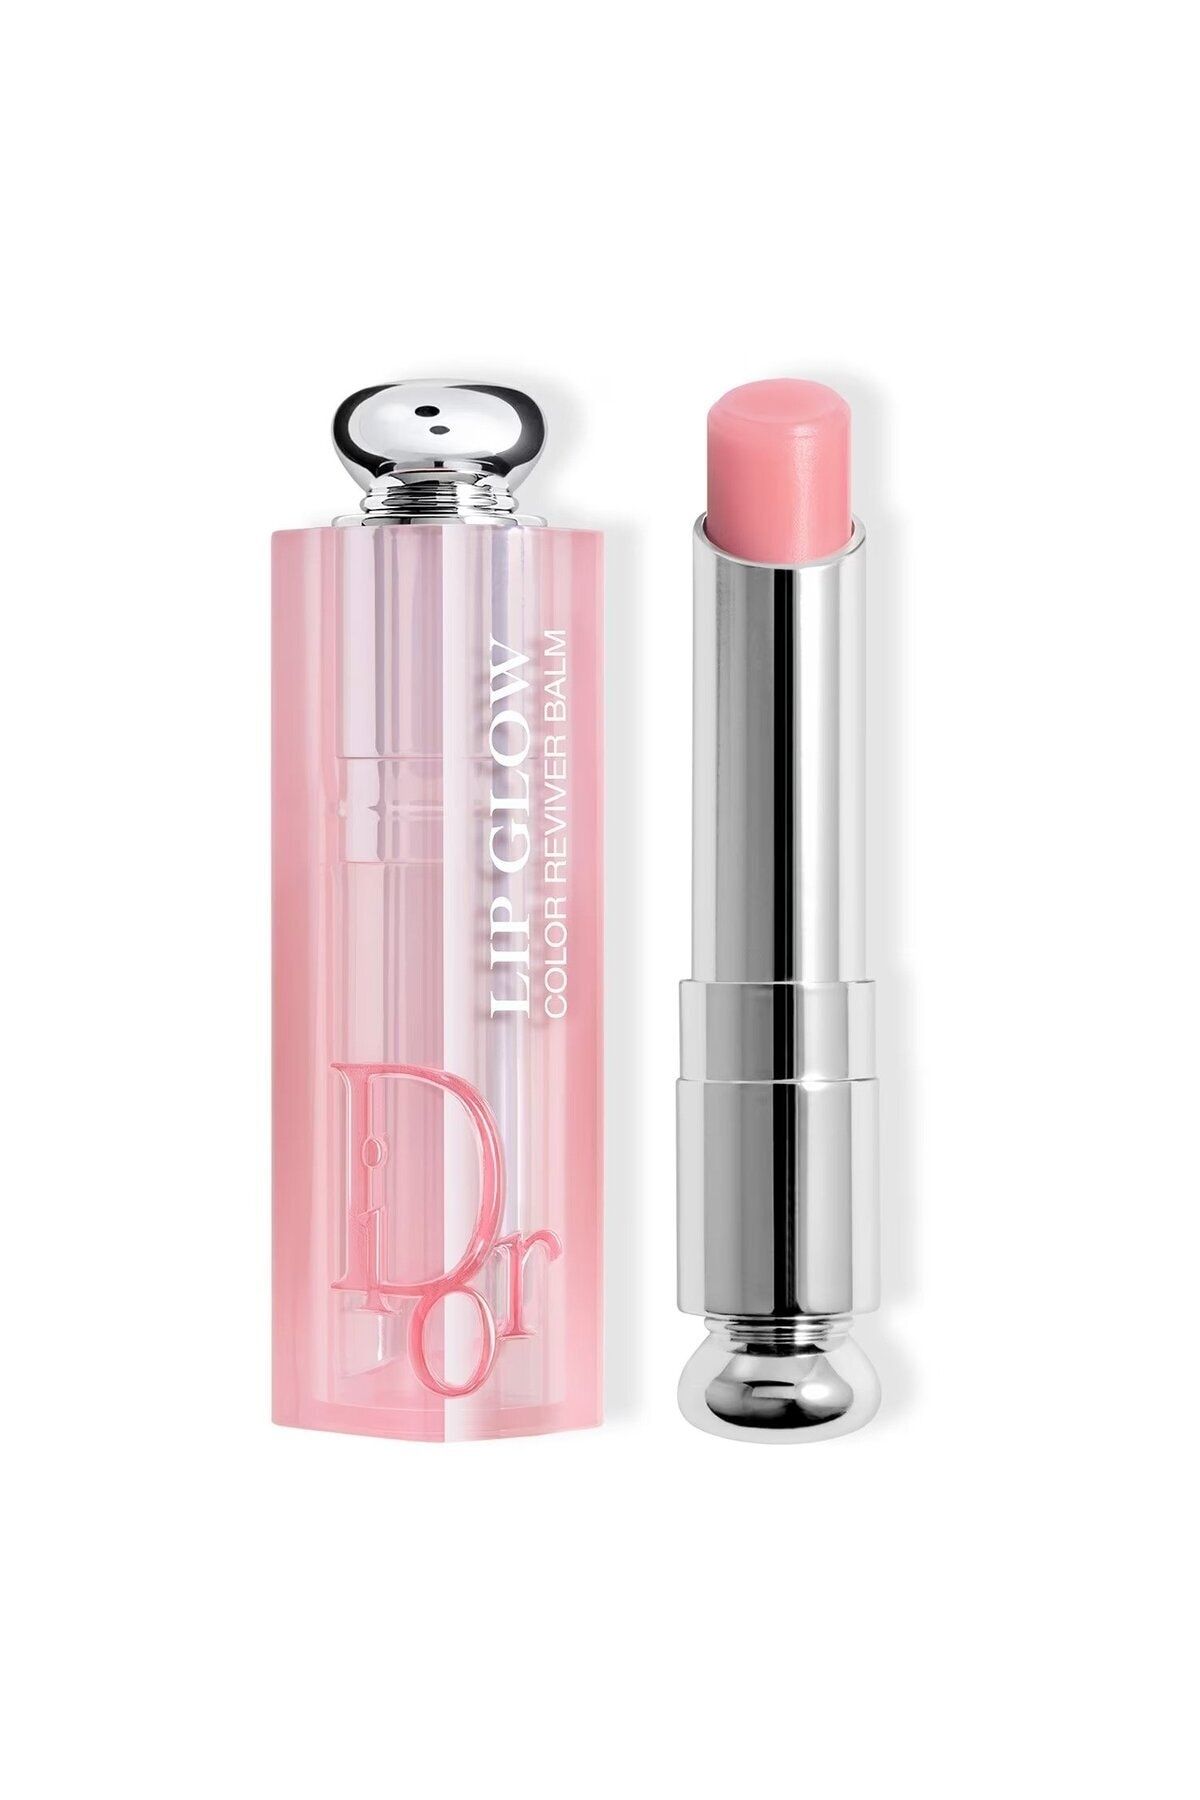 Dior Addict Lip Glow - 24 Saat Boyunca Nemlendirici Ve Renk Arttırıcı Bir Dudak Balmı 3,2 gr